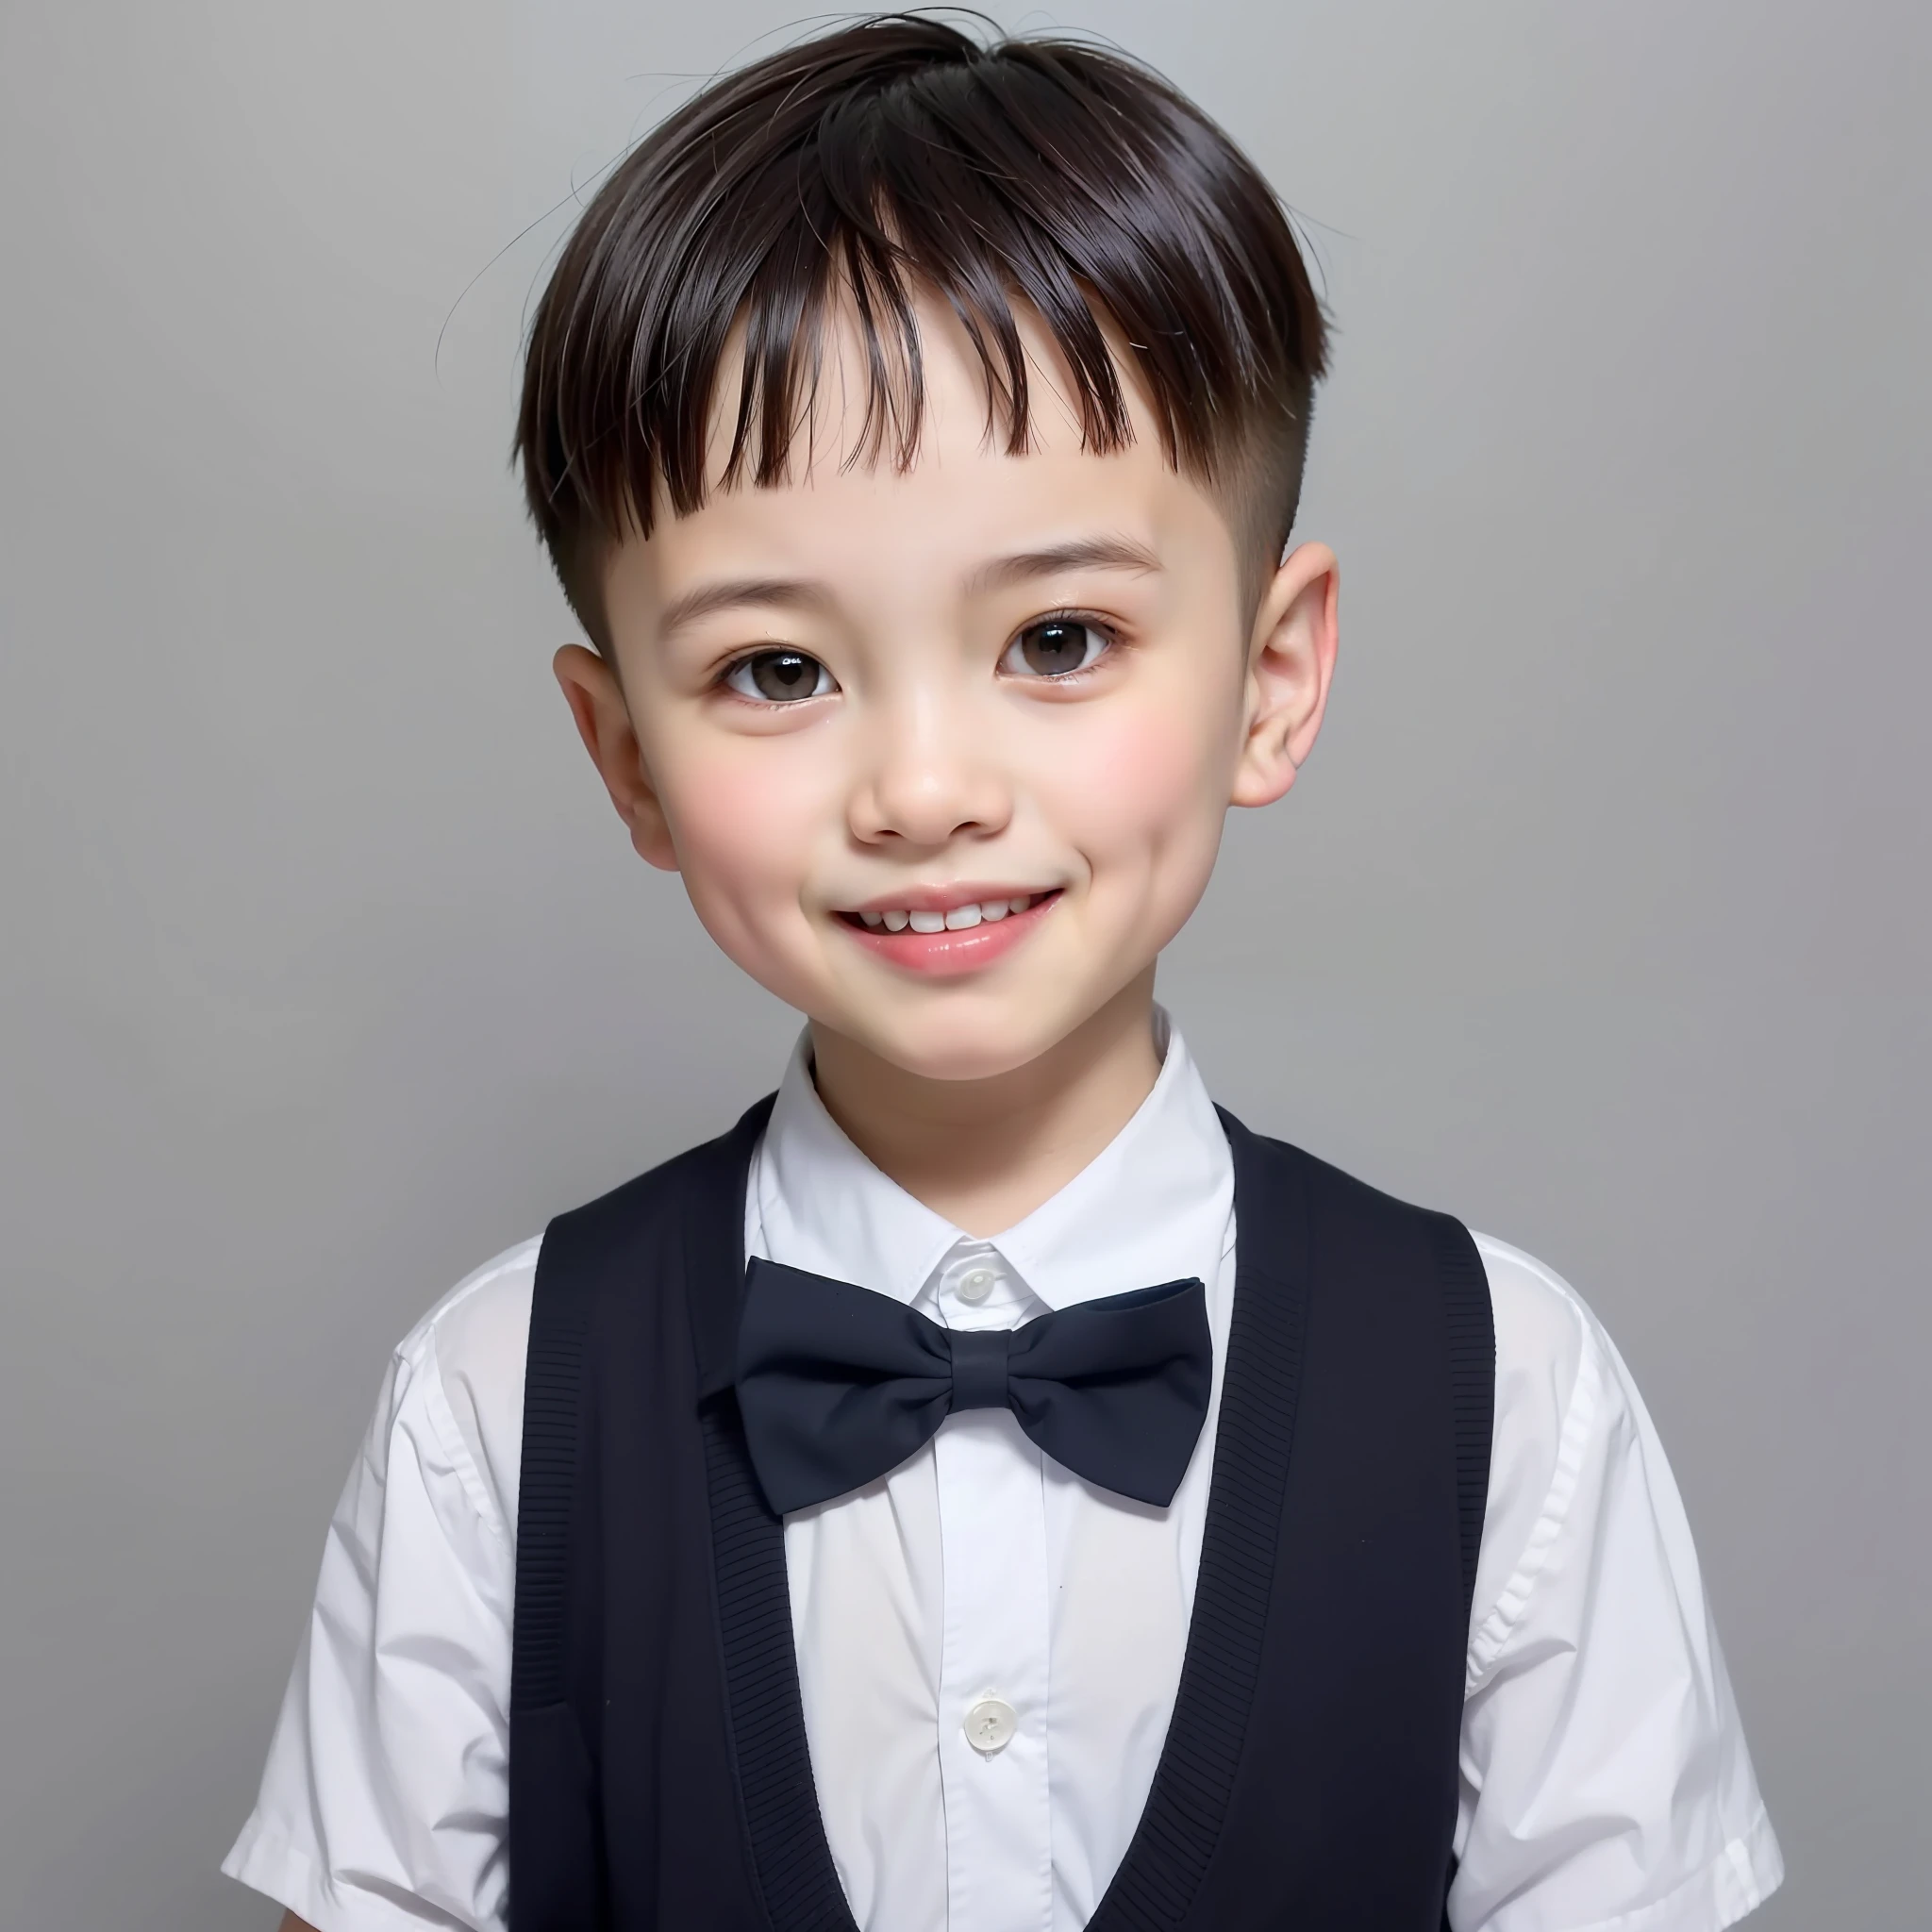 estilo moderno, fundo branco, Foto de identificação de criança chinesa, bonito, menino sorridente, olhos pretos, cabeça plana, gravata borboleta